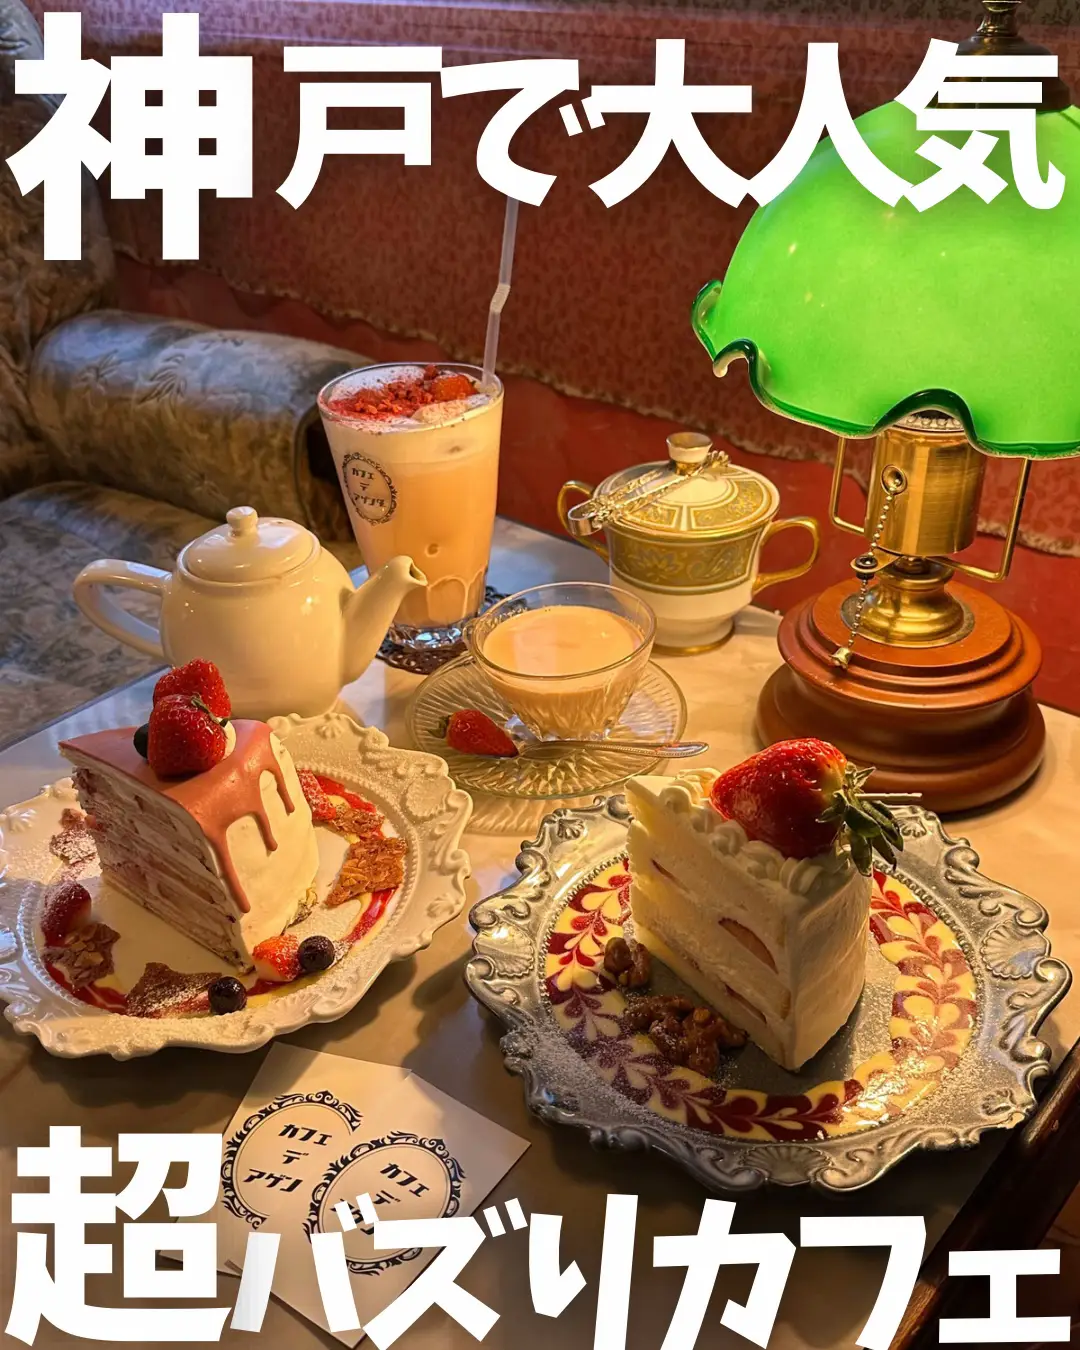 ジェラートピケカフェ神戸 - Lemon8検索